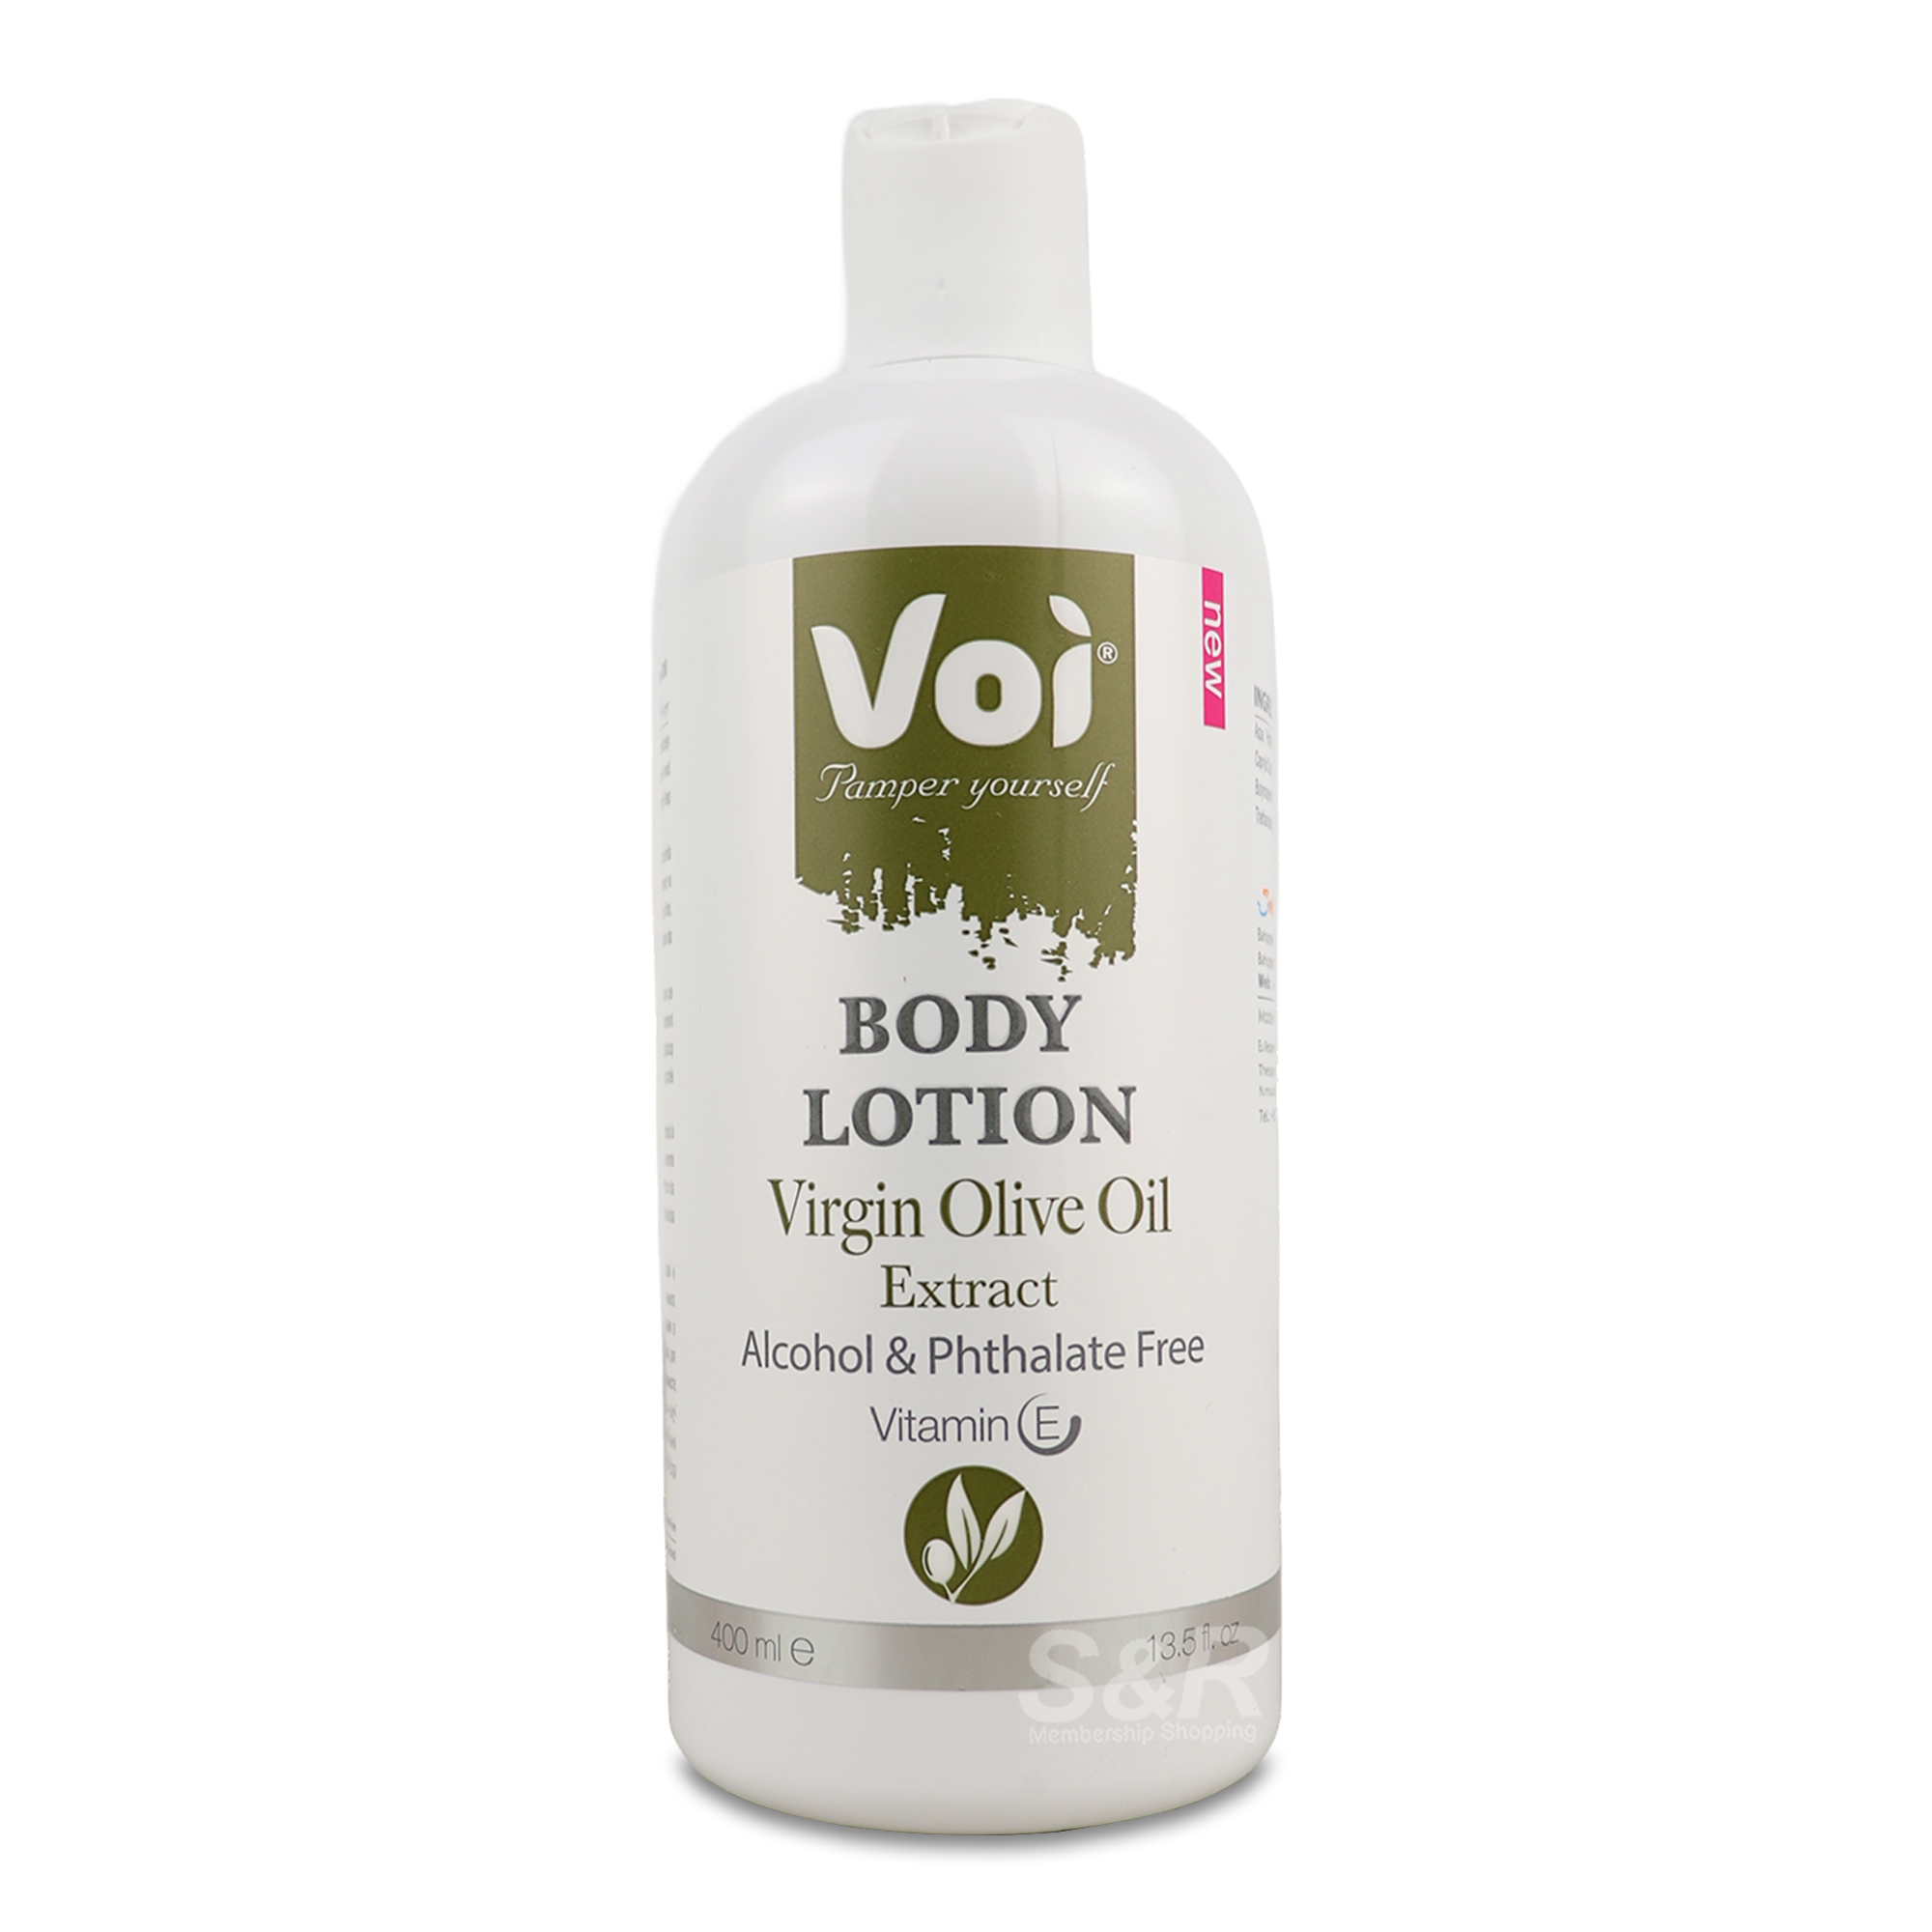 Voi Body Lotion Virgin Olive Oil 400mL